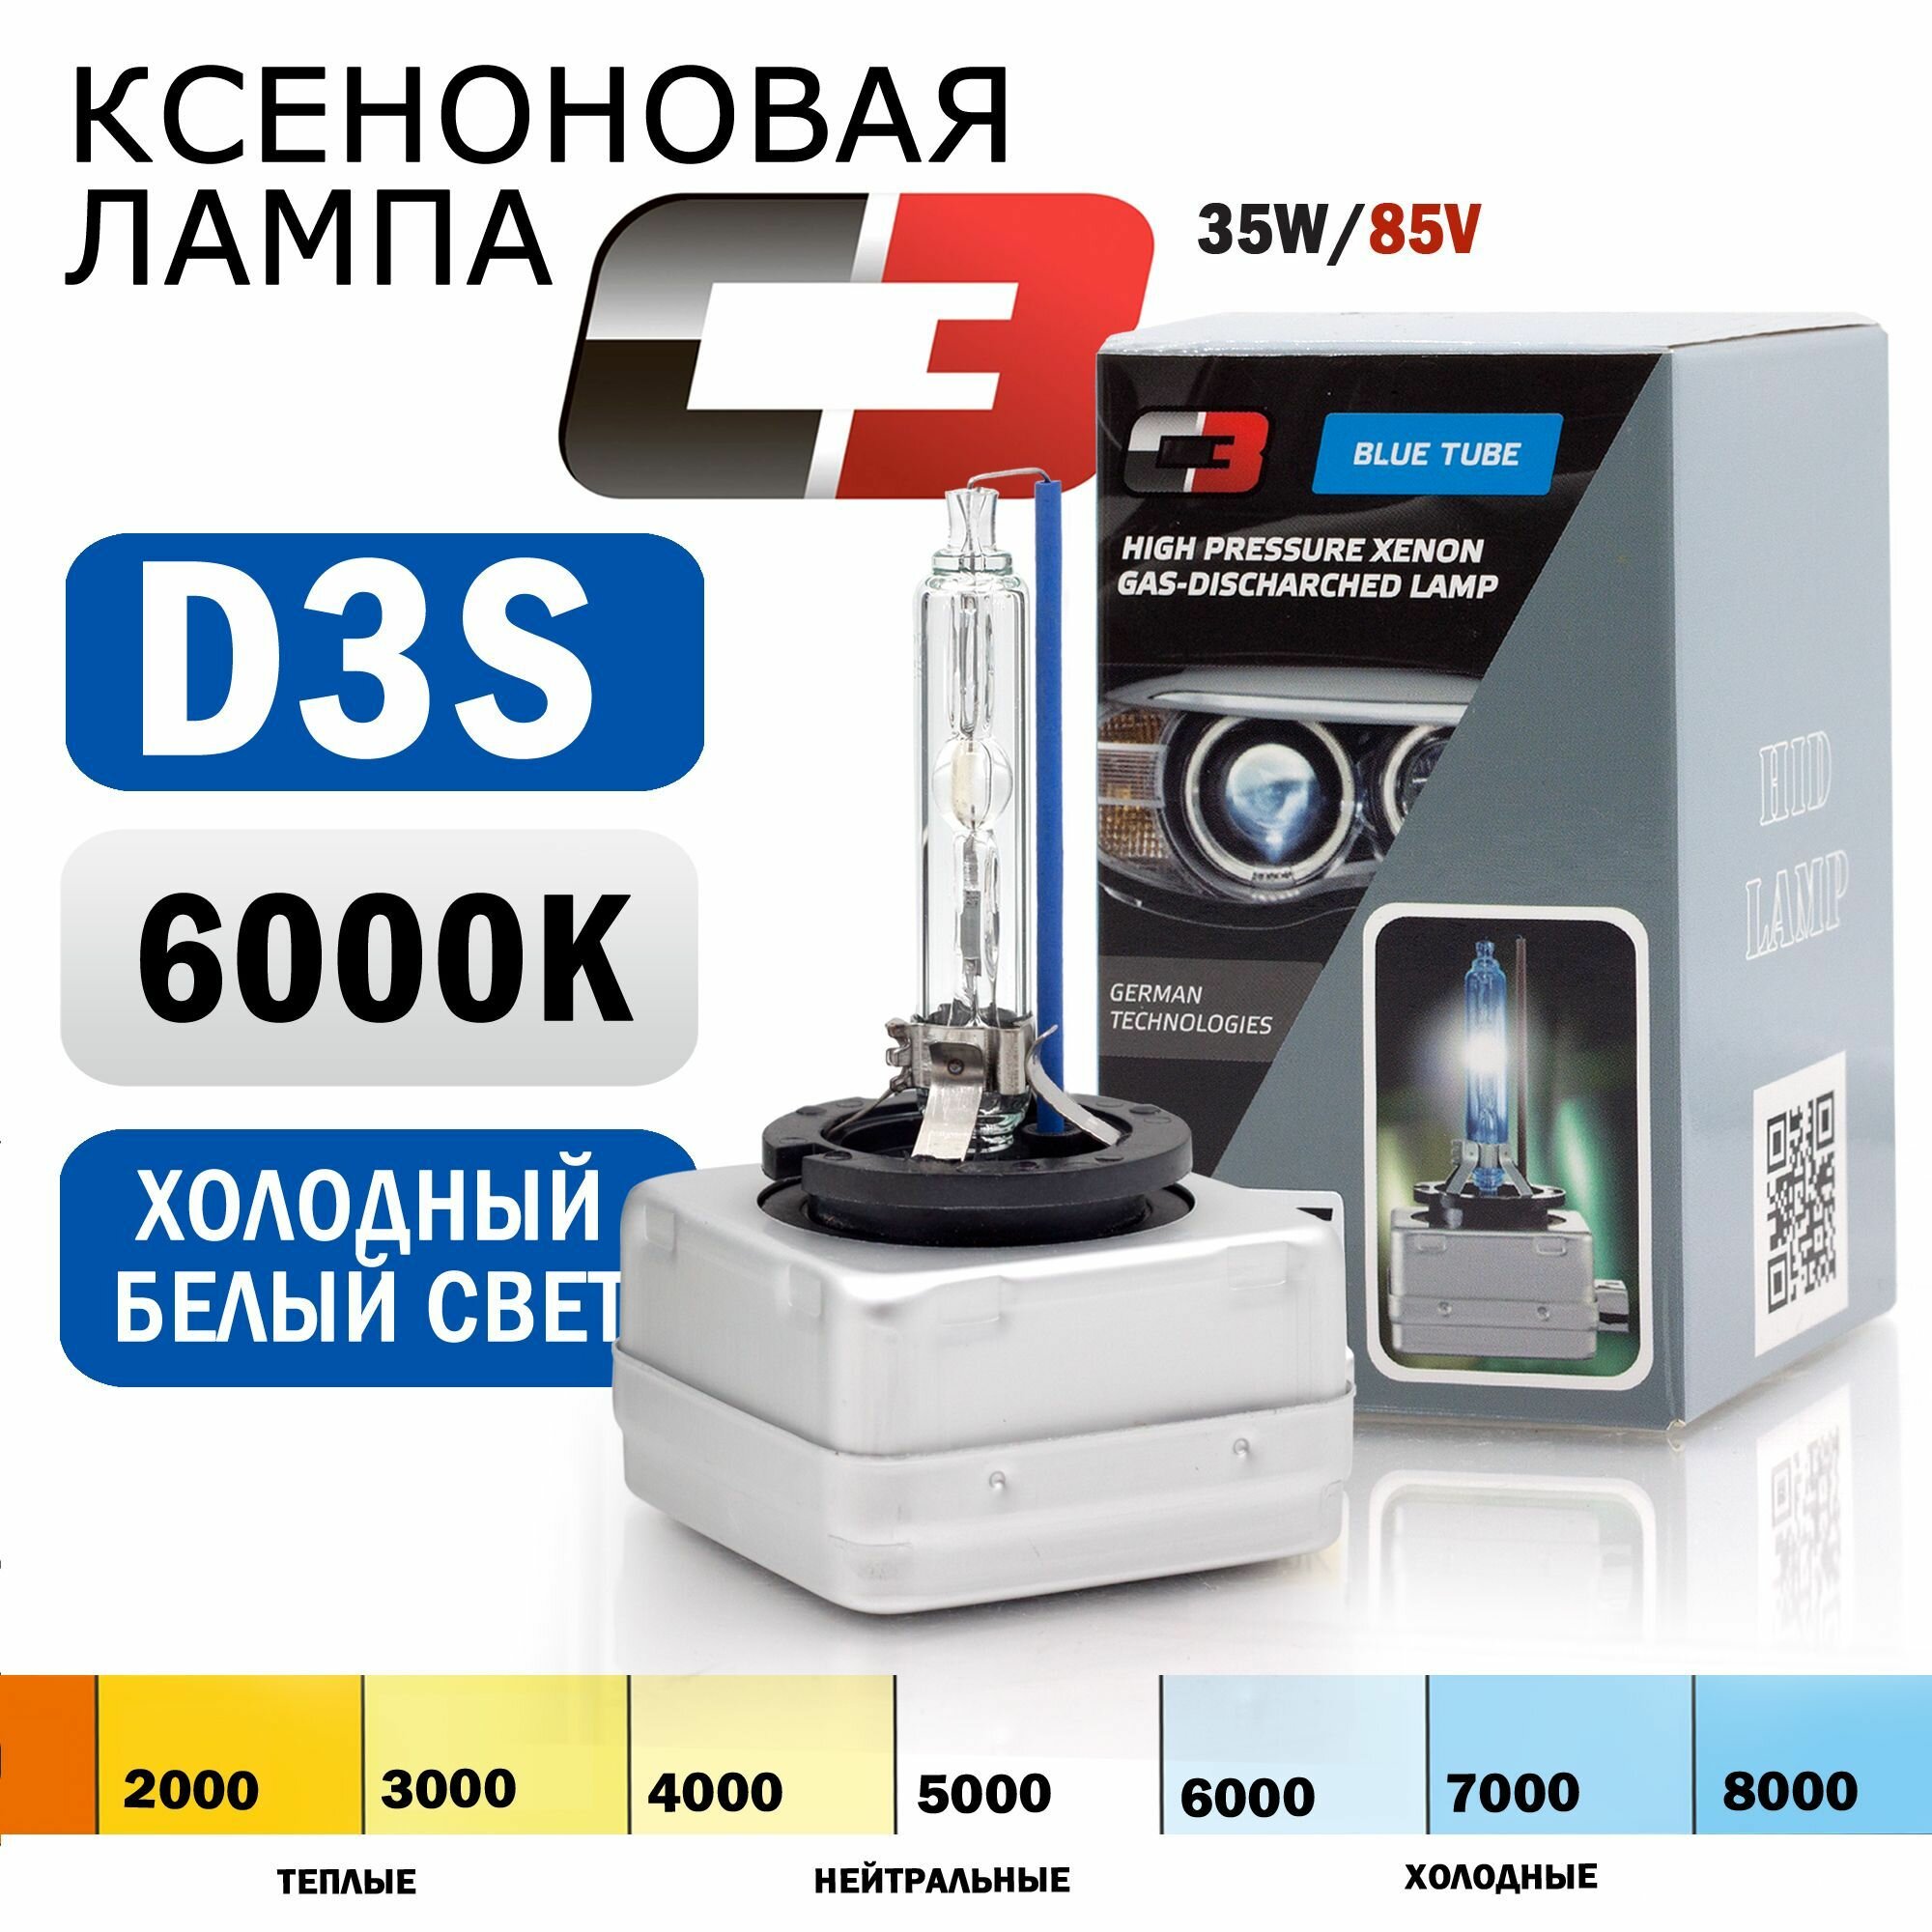 Ксеноновая лампа С-3 D3S 6000K для автомобиля штатный ксенон, питание 12V, мощность 35W, 1 штука